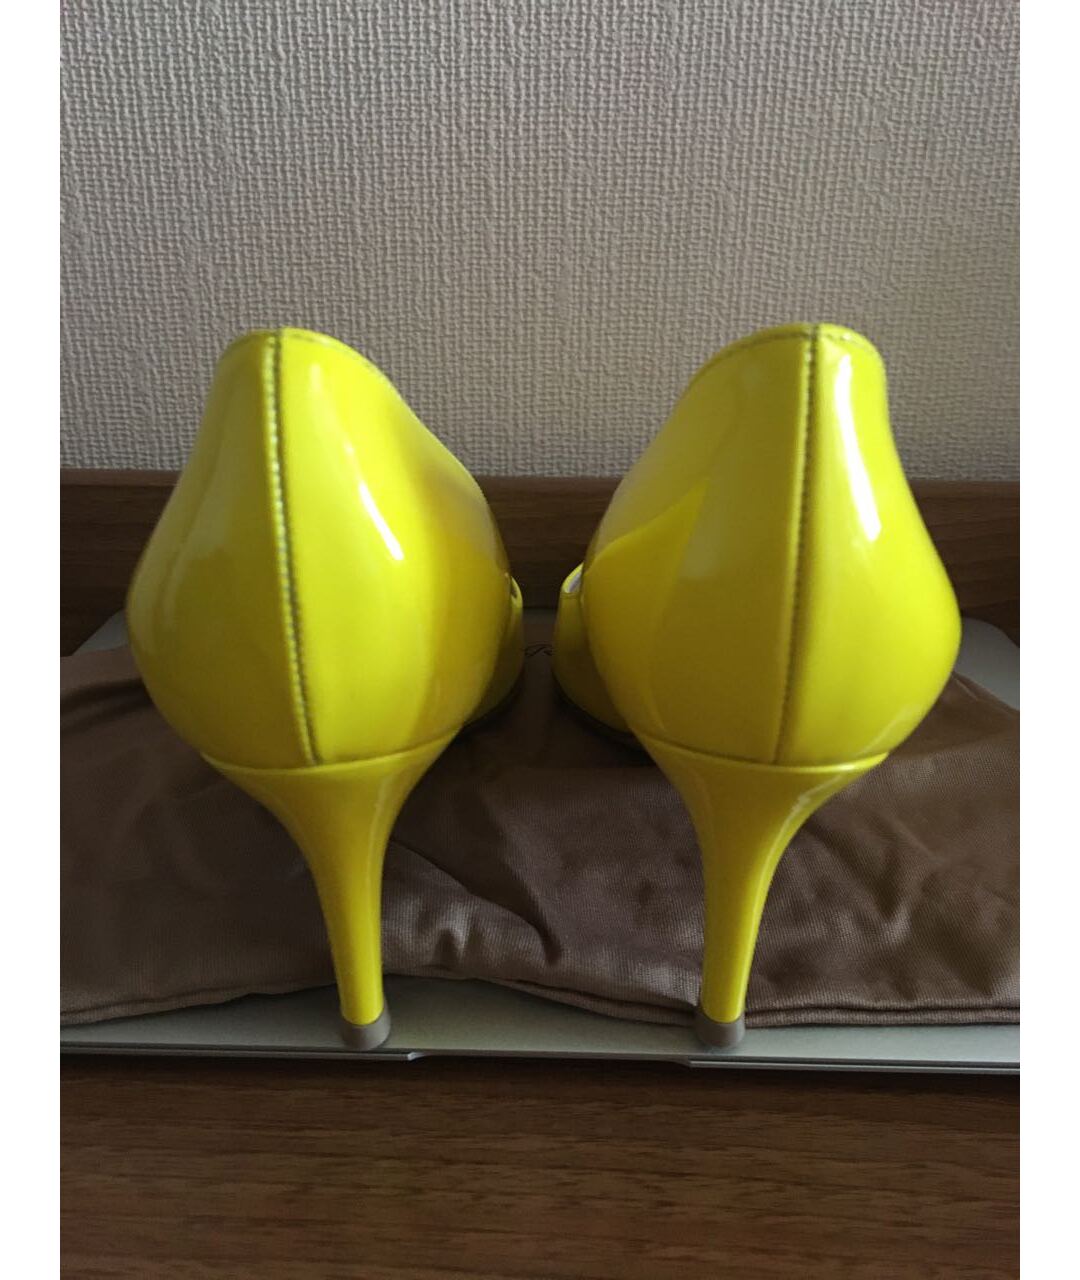 GIANVITO ROSSI Желтые туфли из лакированной кожи, фото 3